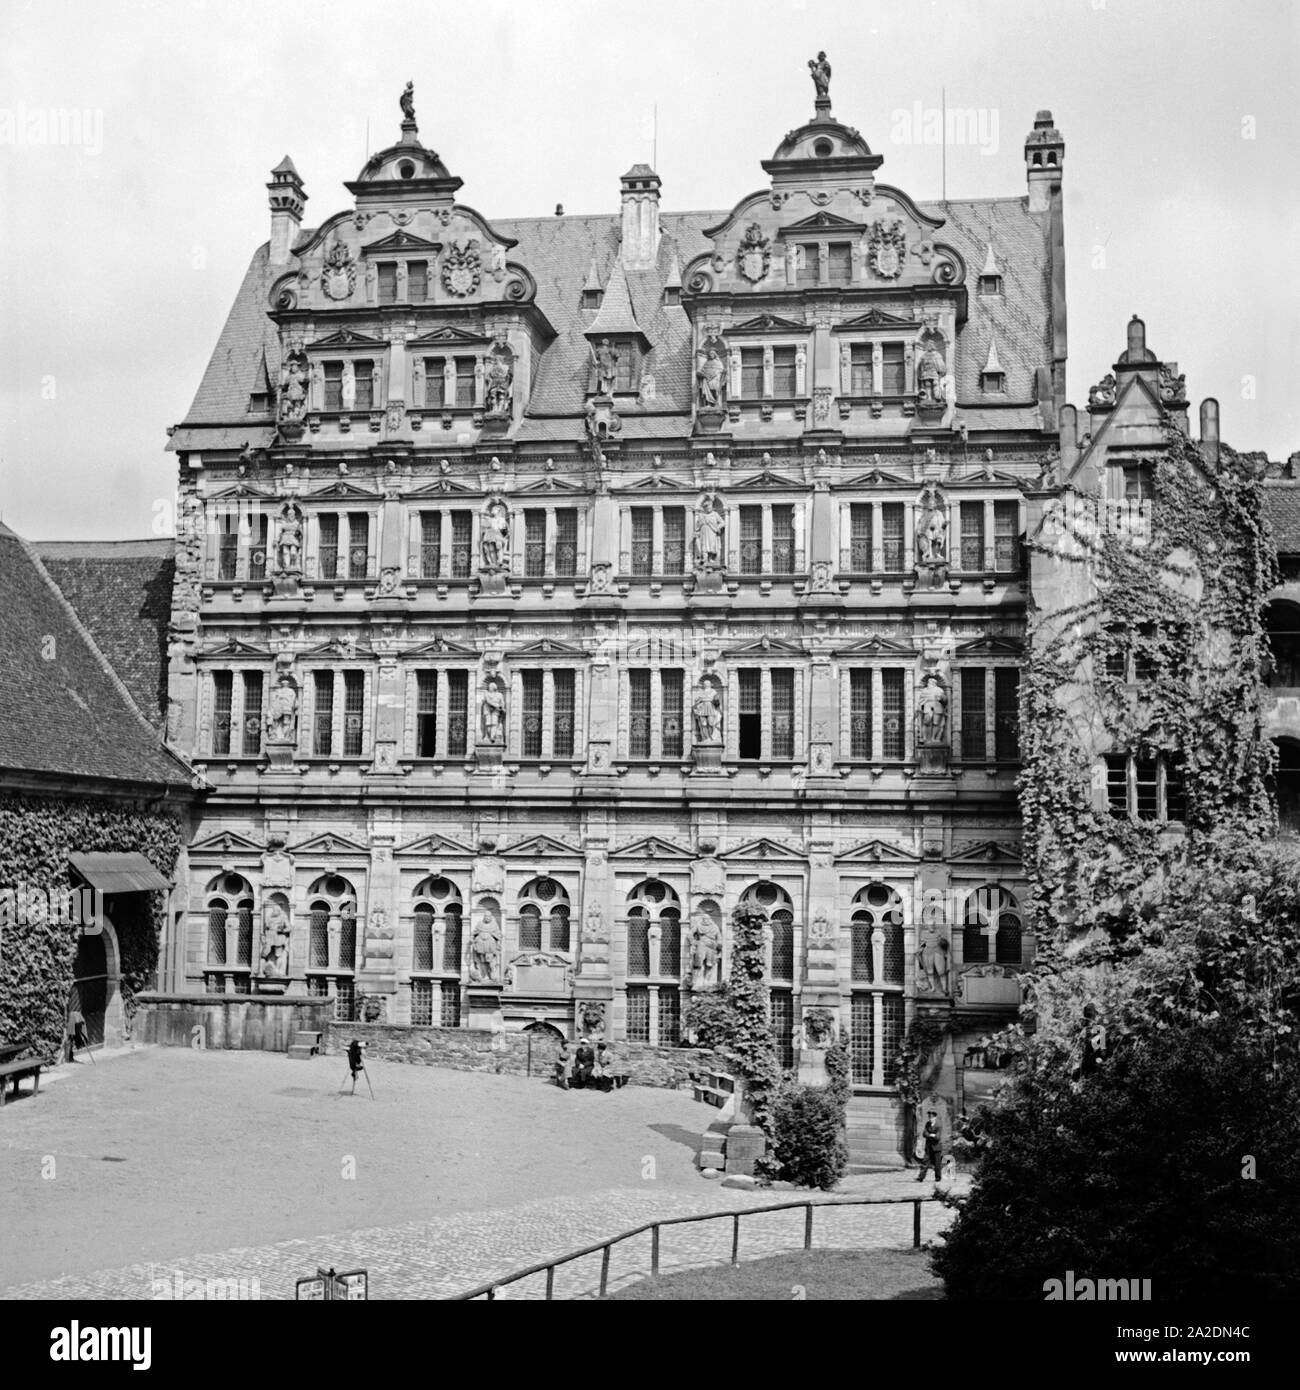 Der Friedrichsbau im Schloß von Heidelberg, Deutschland 1930er Jahre. Friedrichsbau building at the Heidelberg castle, Germany 1930s. Stock Photo